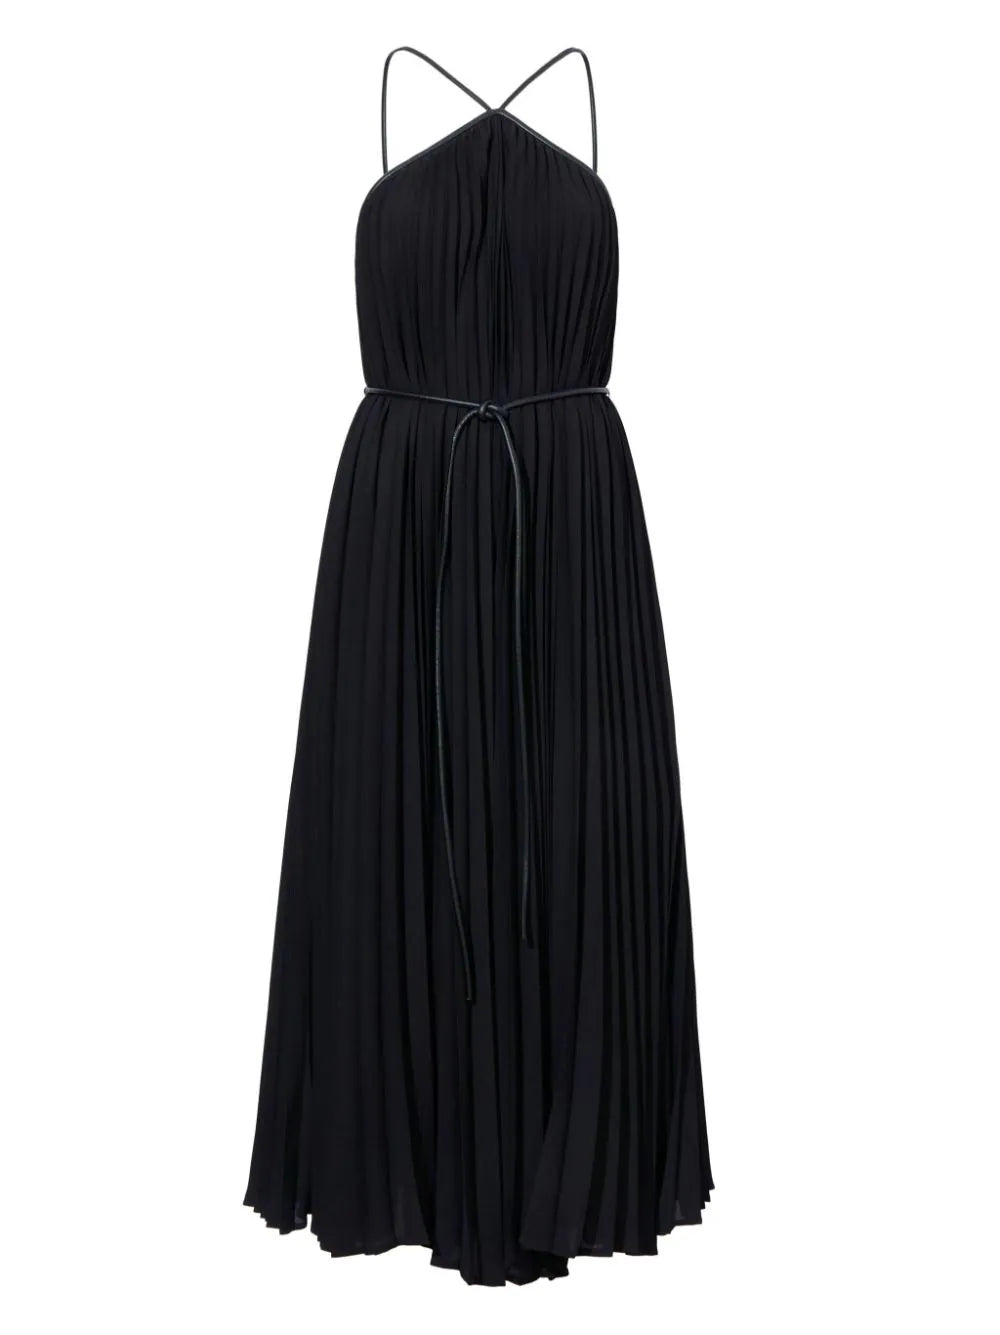 Celeste Dress in Black